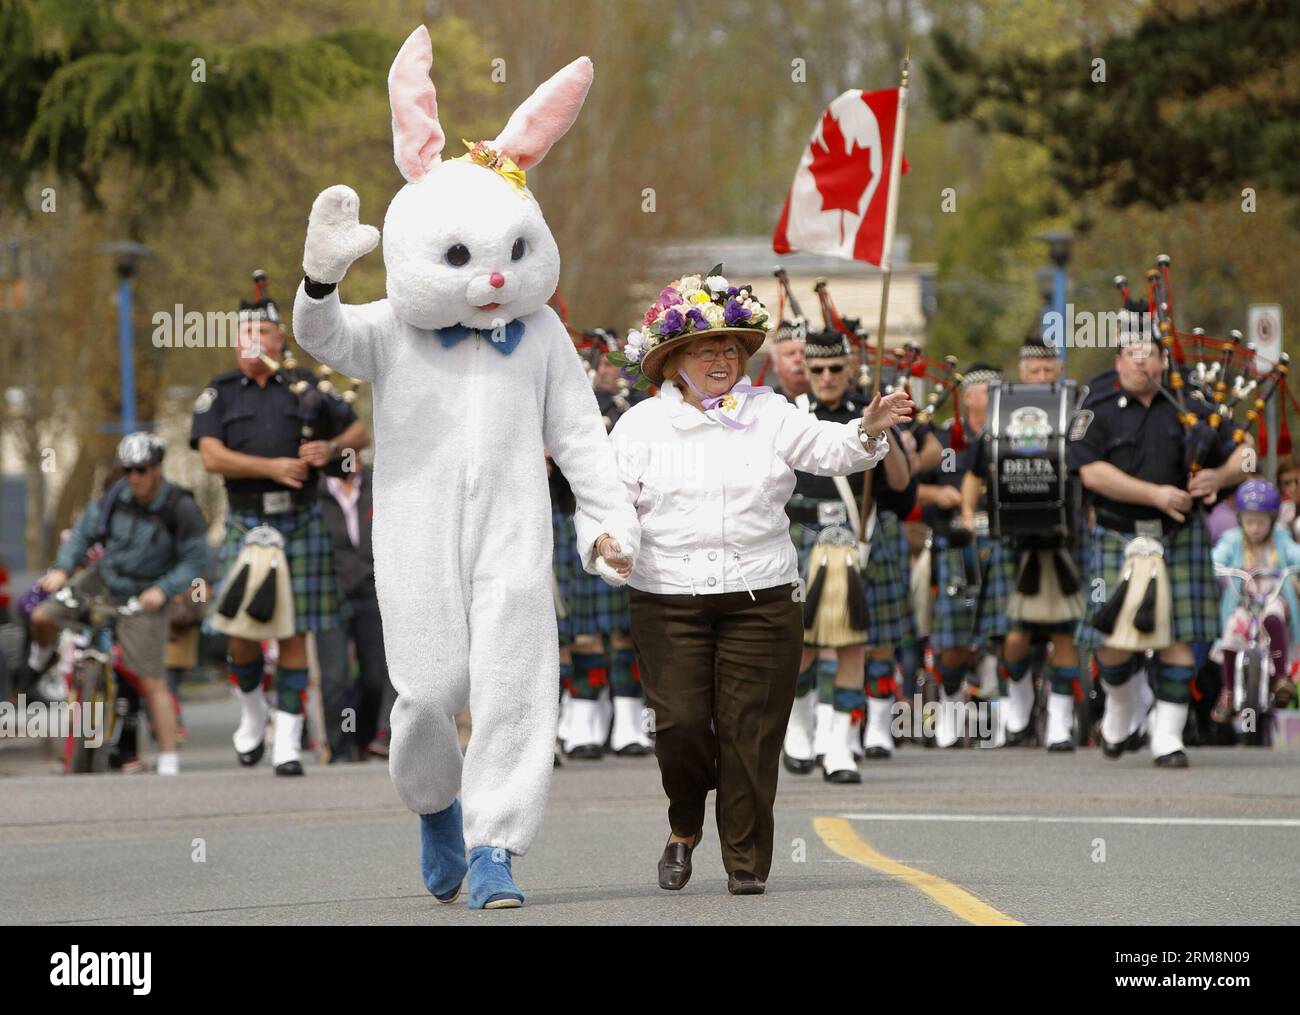 VANCOUVER, 20. April 2014 - Ein Hasenmaskottchen nimmt an der Osterparade während der Osterveranstaltung in Delta, Kanada, am 20. April 2014 Teil. Die Menschen nehmen an der jährlichen Osterparade und der Eierjagd Teil, um Ostern im Delta zu feiern. (Xinhua/Liang Sen)(ctt) CANADA-VANCOUVER-EASTER PUBLICATIONxNOTxINxCHN Vancouver 20. April 2014 ein Hasenmaskottchen nimmt an der Osterparade im Delta Canada Teil 20. April 2014 Prominente nehmen an der jährlichen Osterparade und der Eierjagd Teil, um die Osterparade im Delta XINHUA zu feiern Liang Sen CTT Canada Vancouver Easter PUBLxATCHIxN Stockfoto